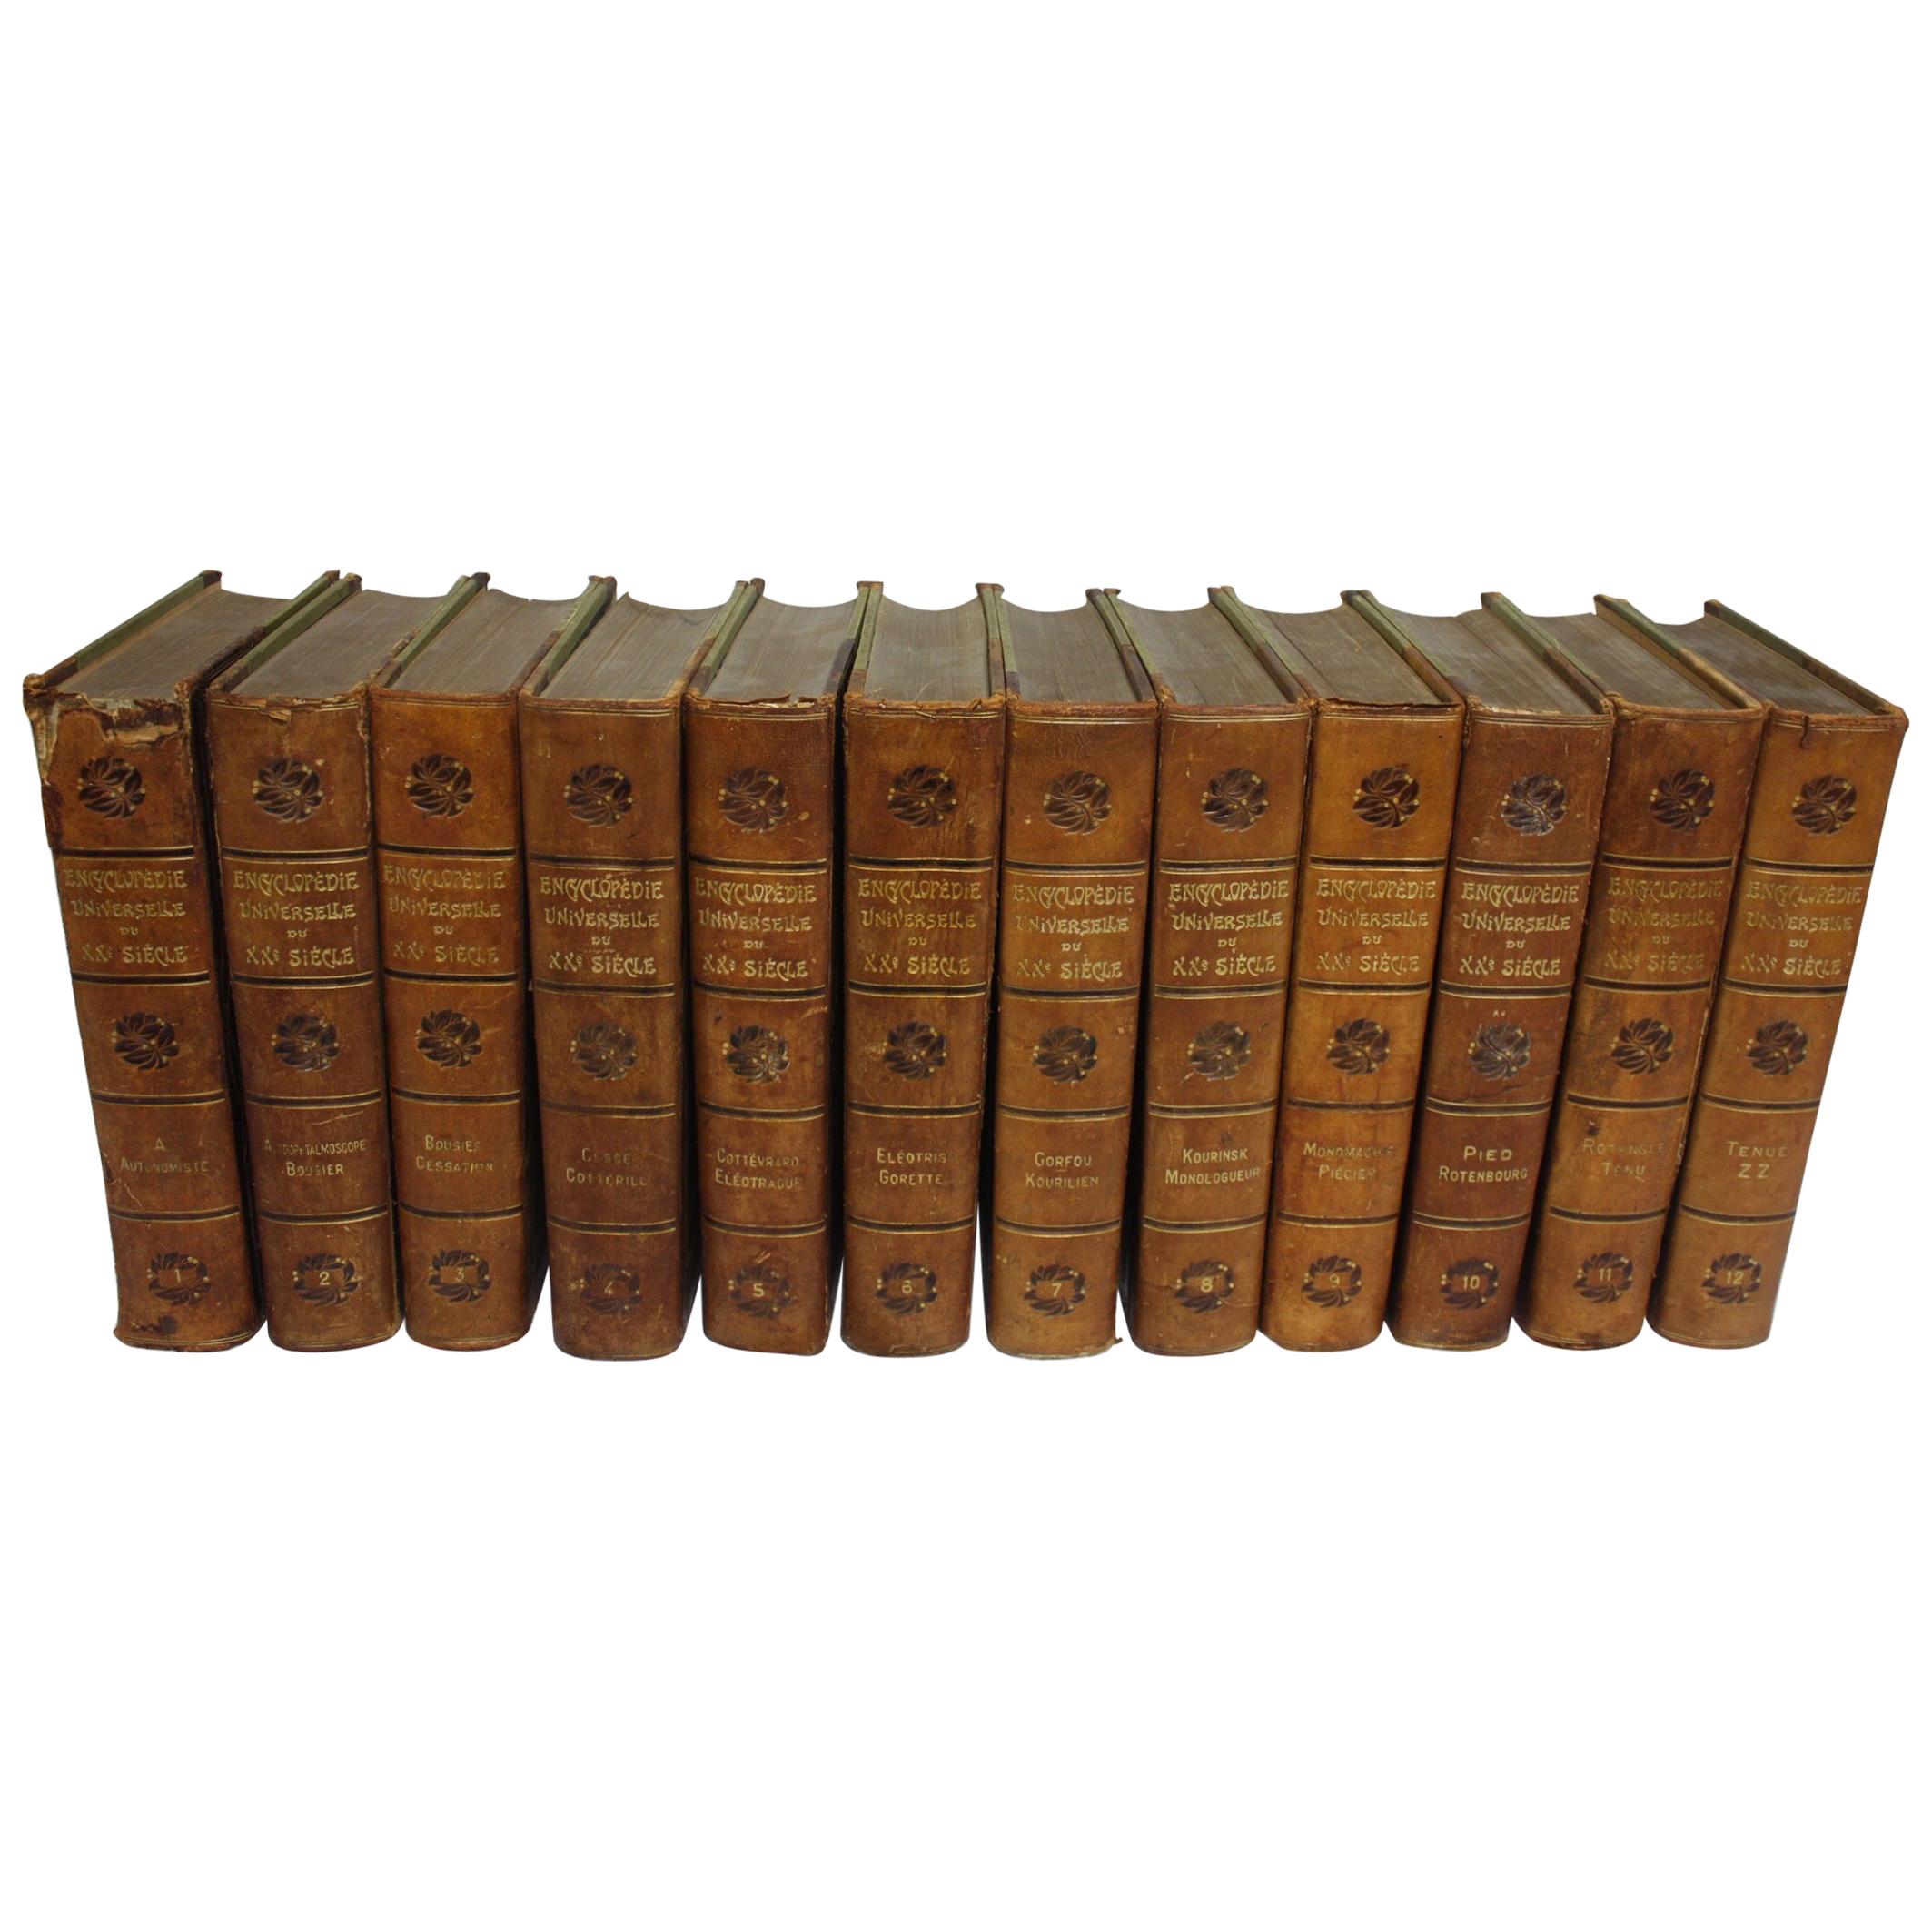 « Encyclopédie universelle » française du début du XXe siècle, datée de 1908